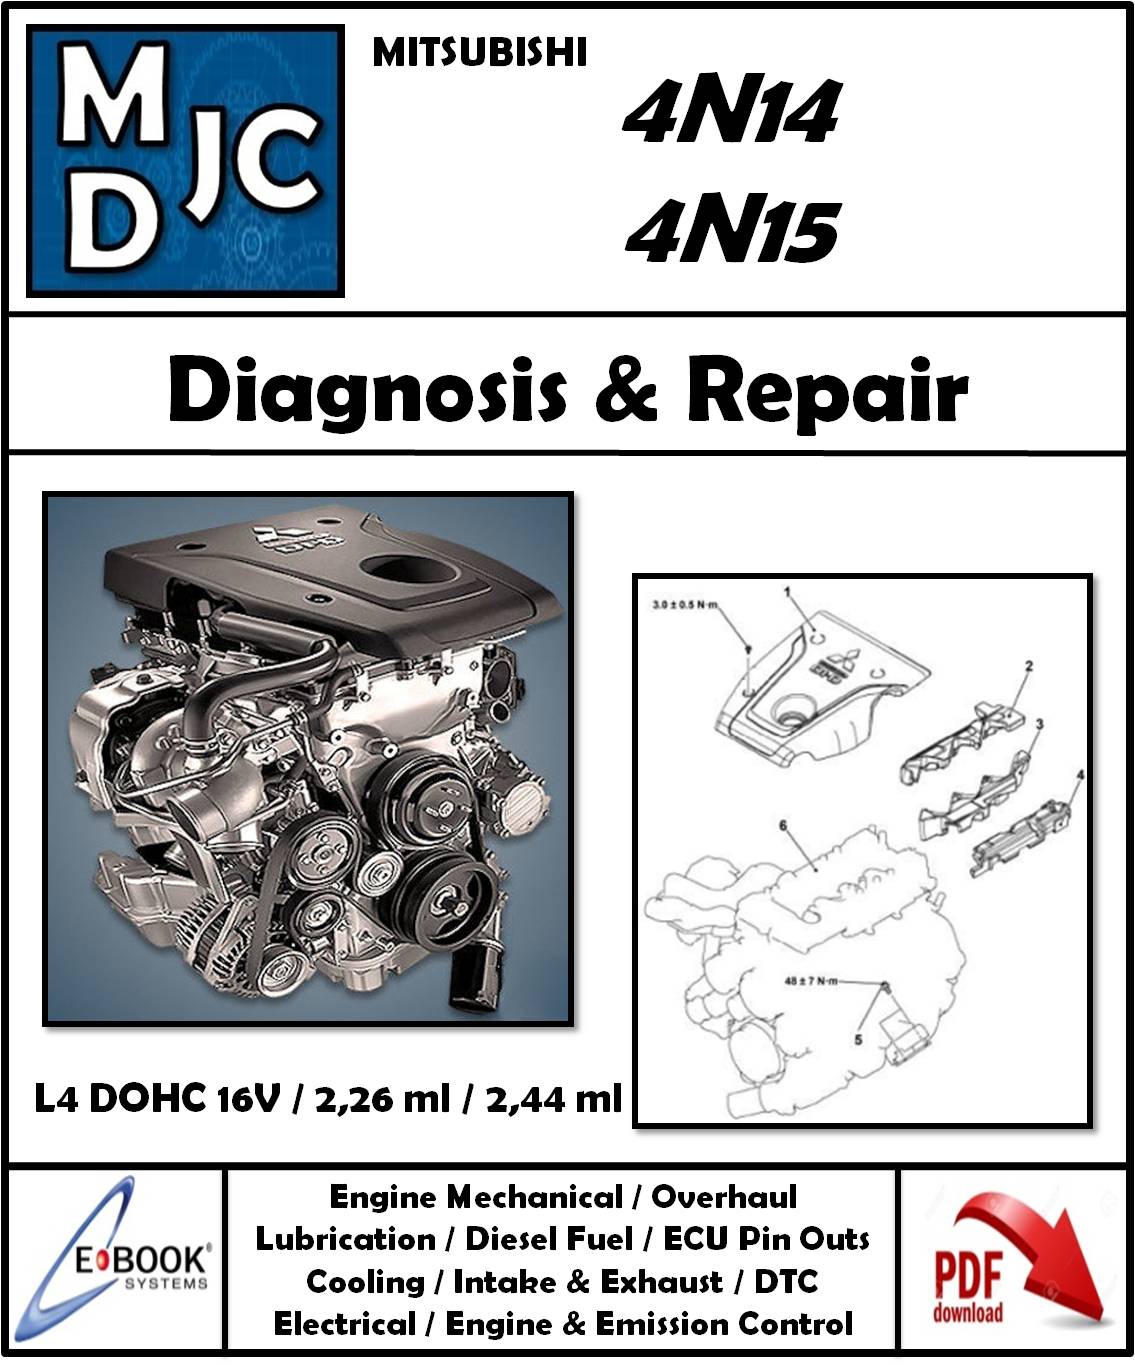 Manual de Taller (Diagnosis y Reparación) Motor Mitsubishi 4N14 / 4N15